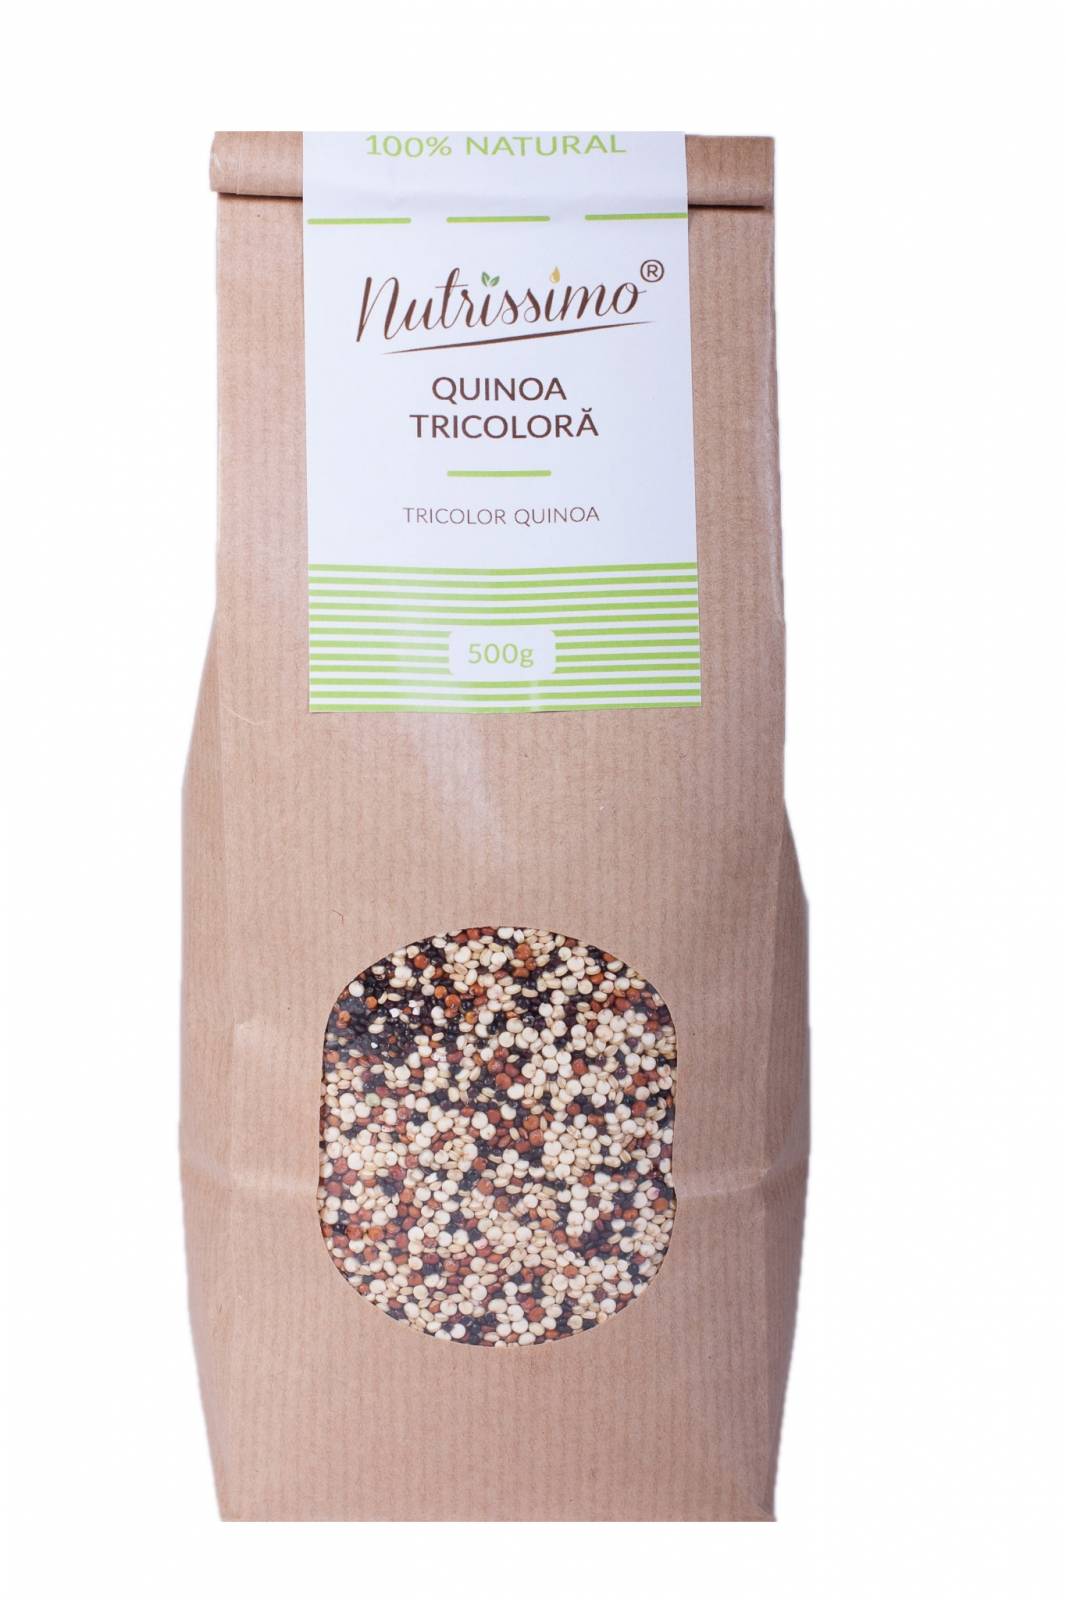 Quinoa tricolora, 500g - nutrissimo